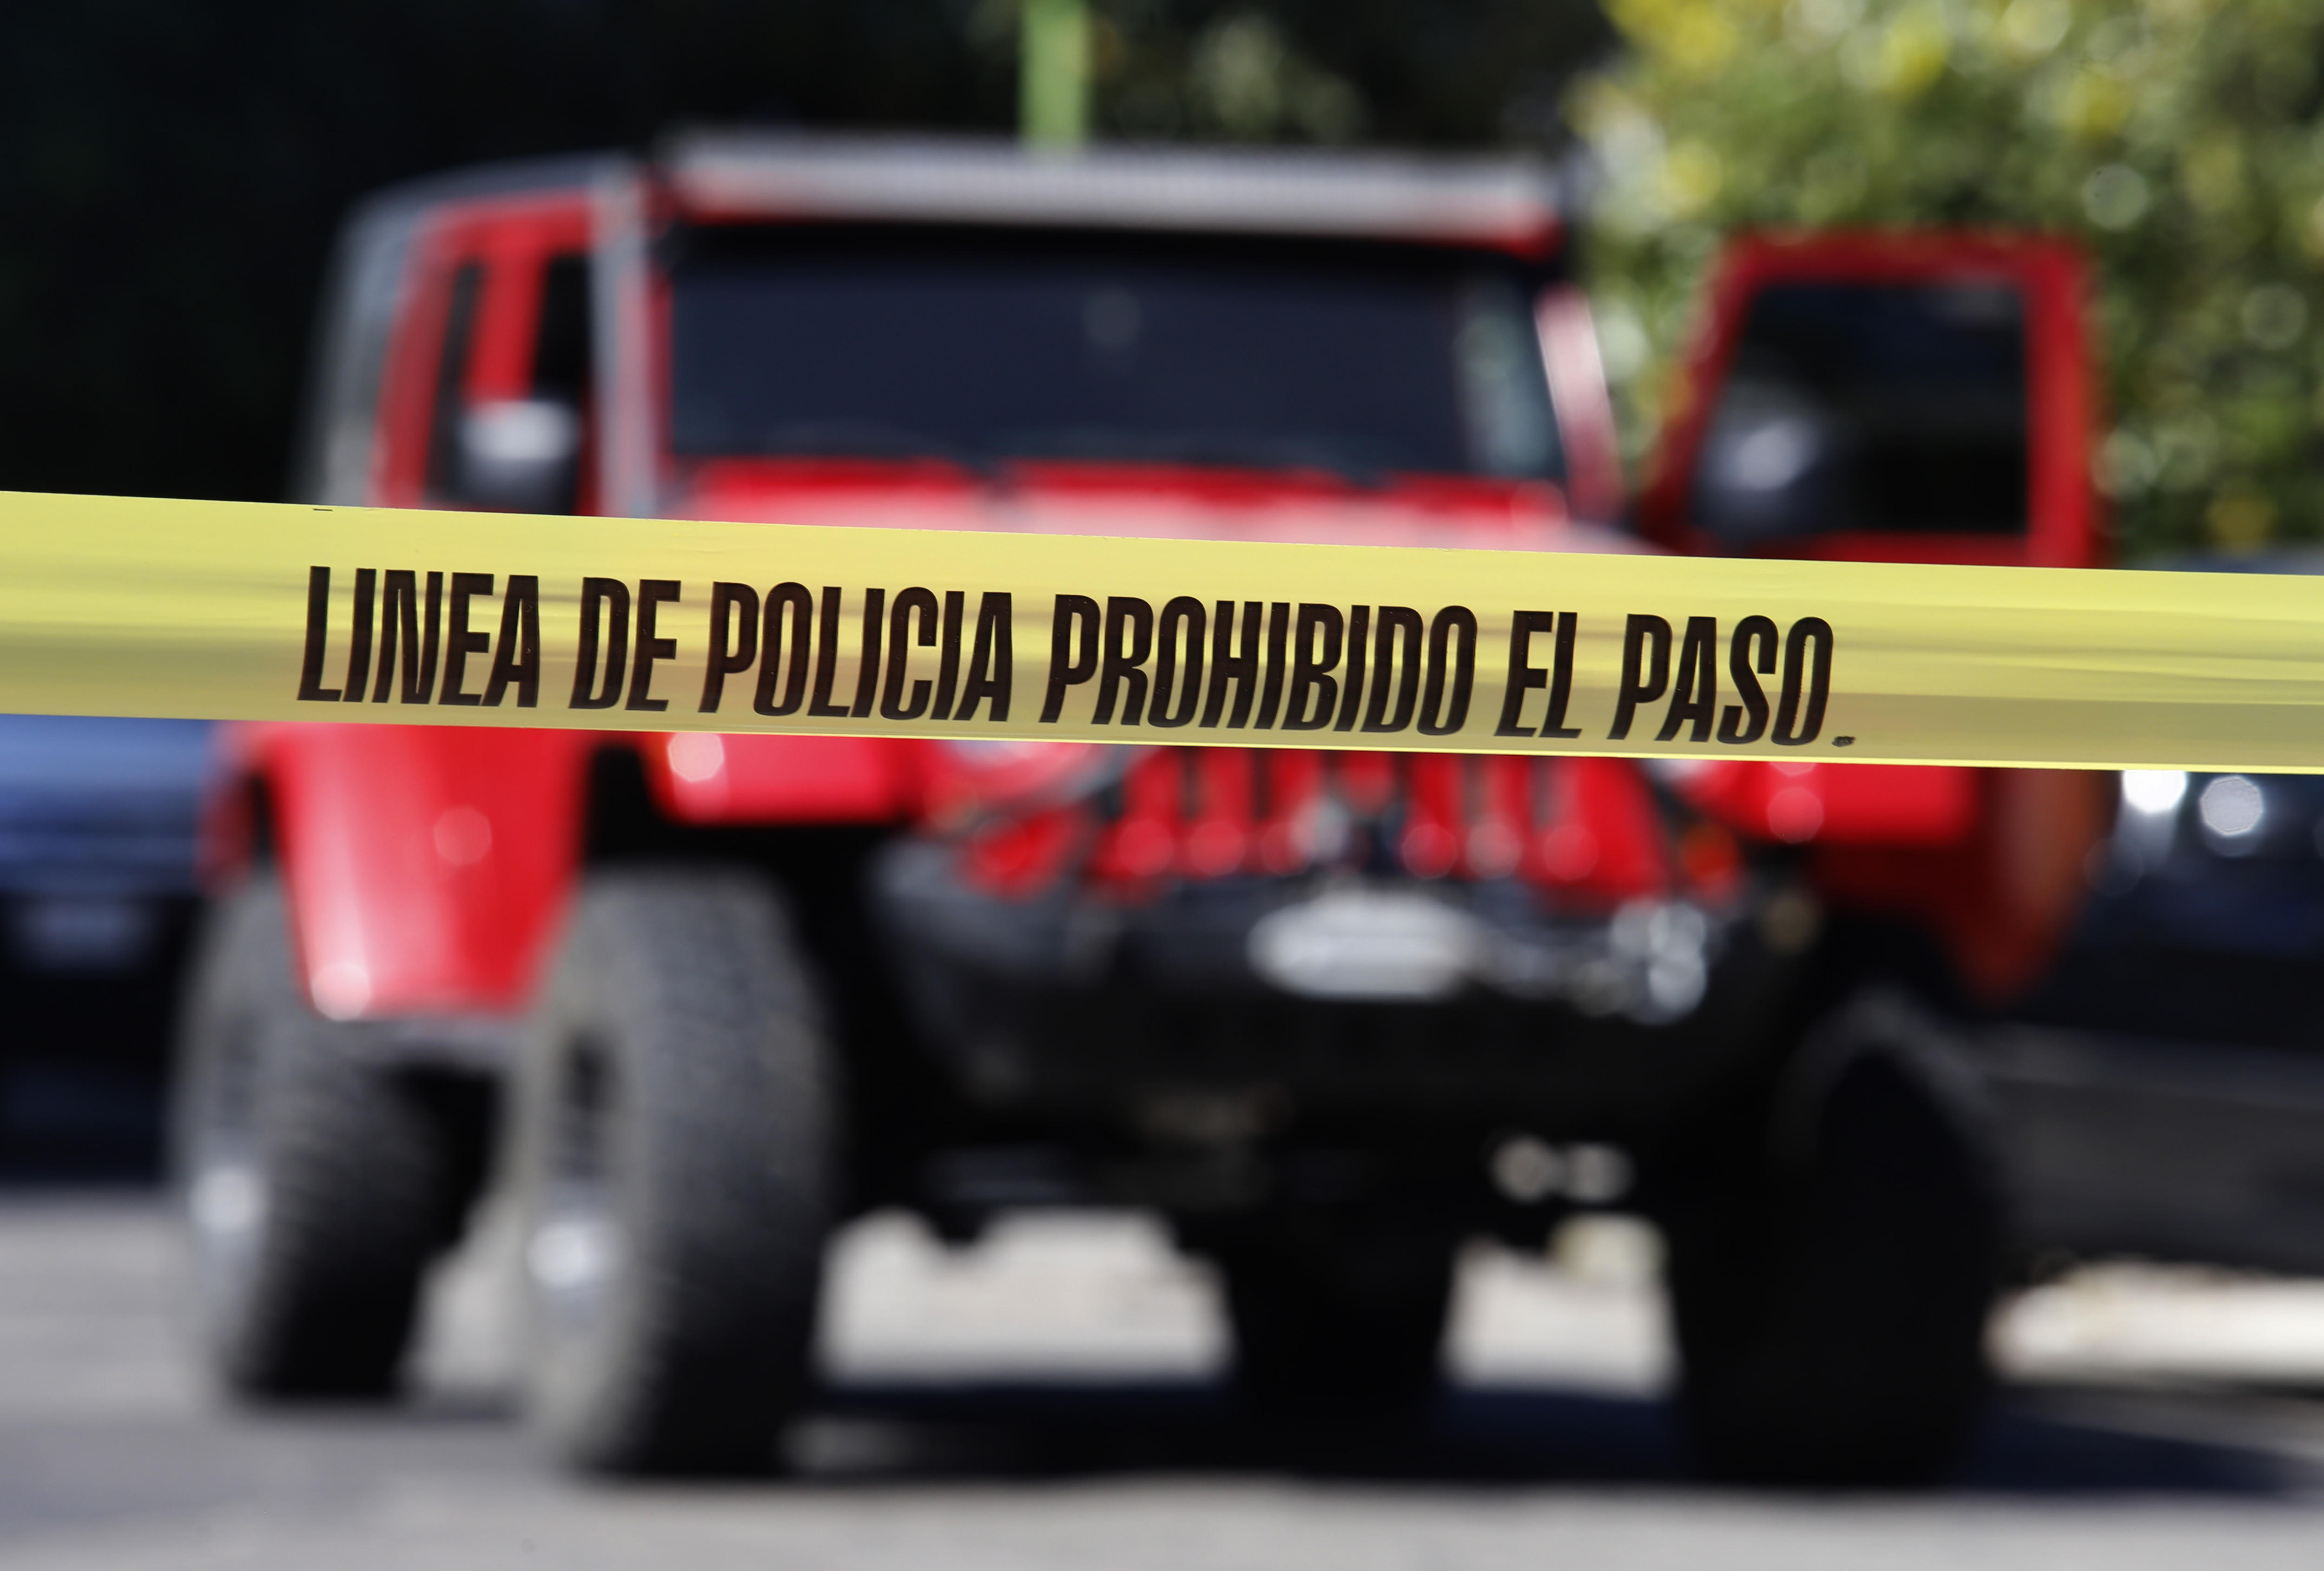 Ataque en Guaymas: línea de investigación revelaría posible atentado contra Comisario municipal

Foto: EFE/Archivo
